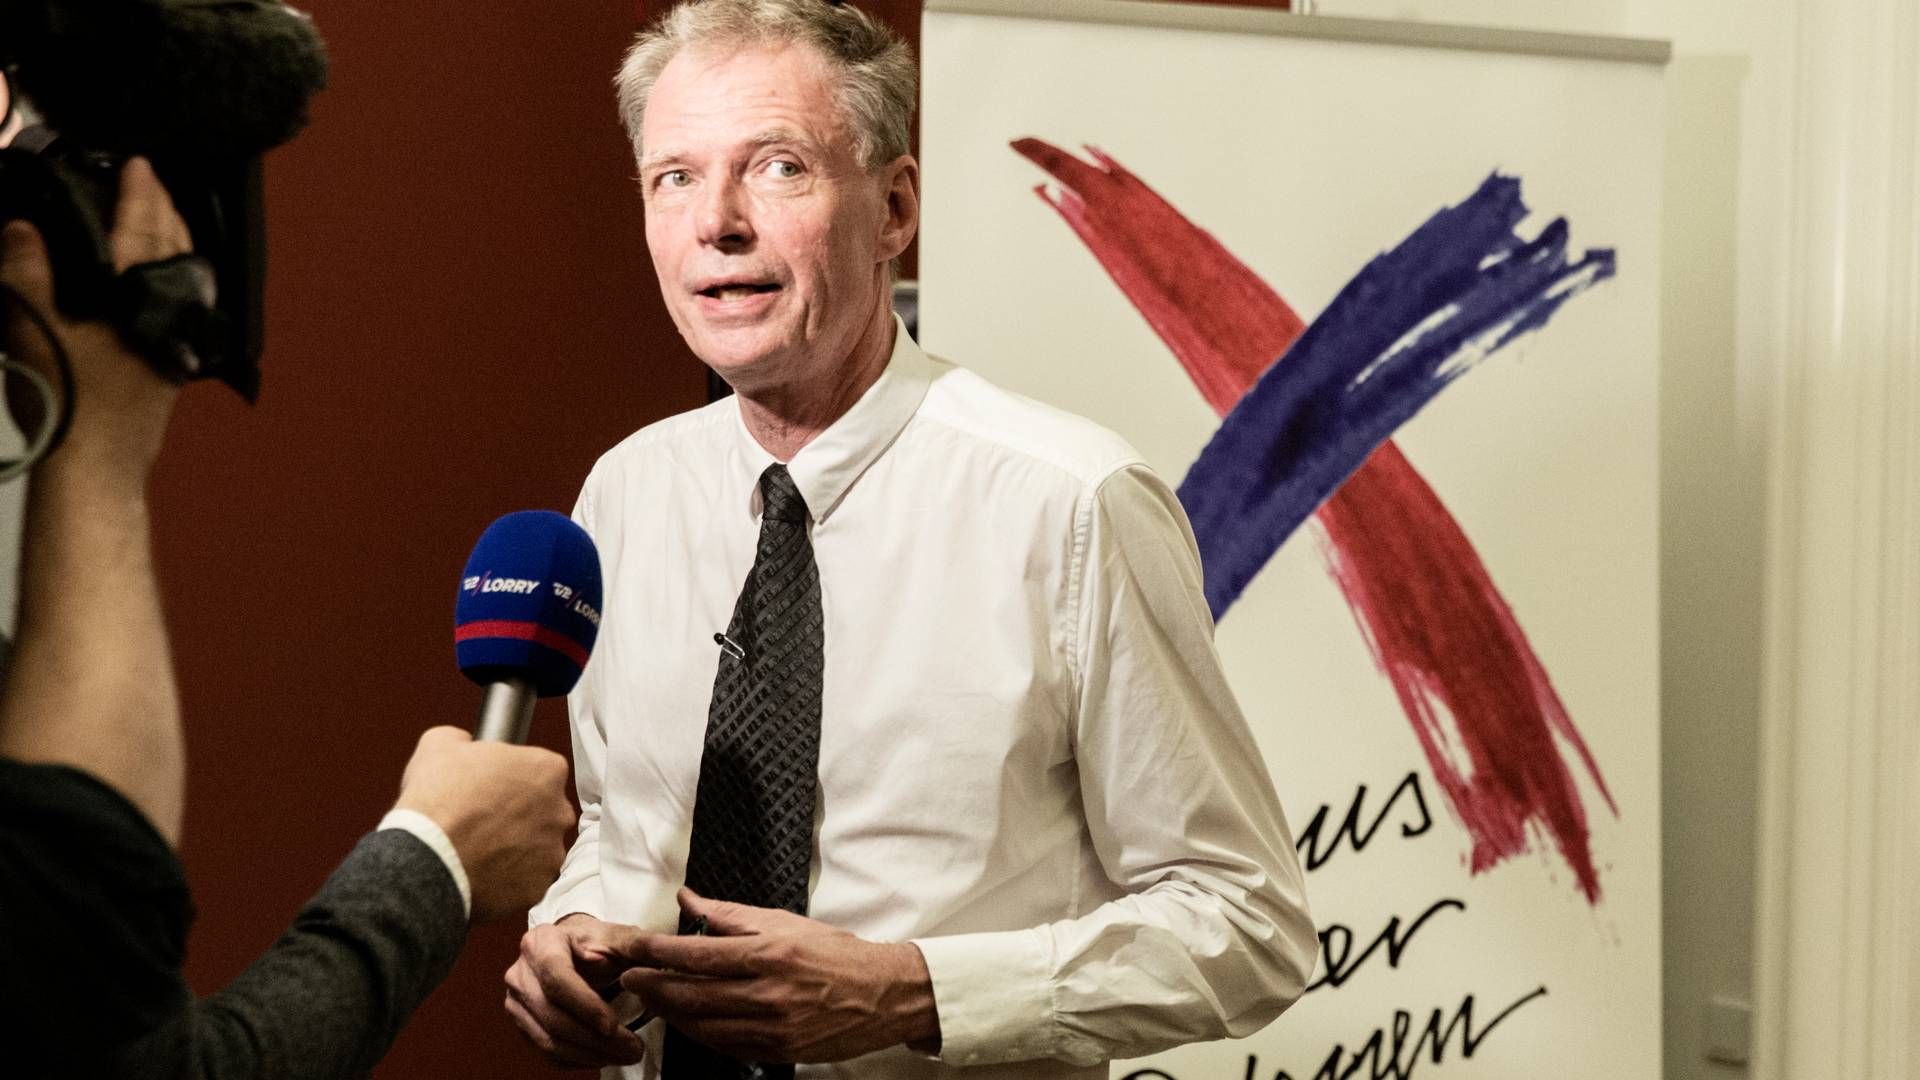 Klaus Riskær stillede op med eget parti ved valget i 2019. | Foto: Jens Hartmann